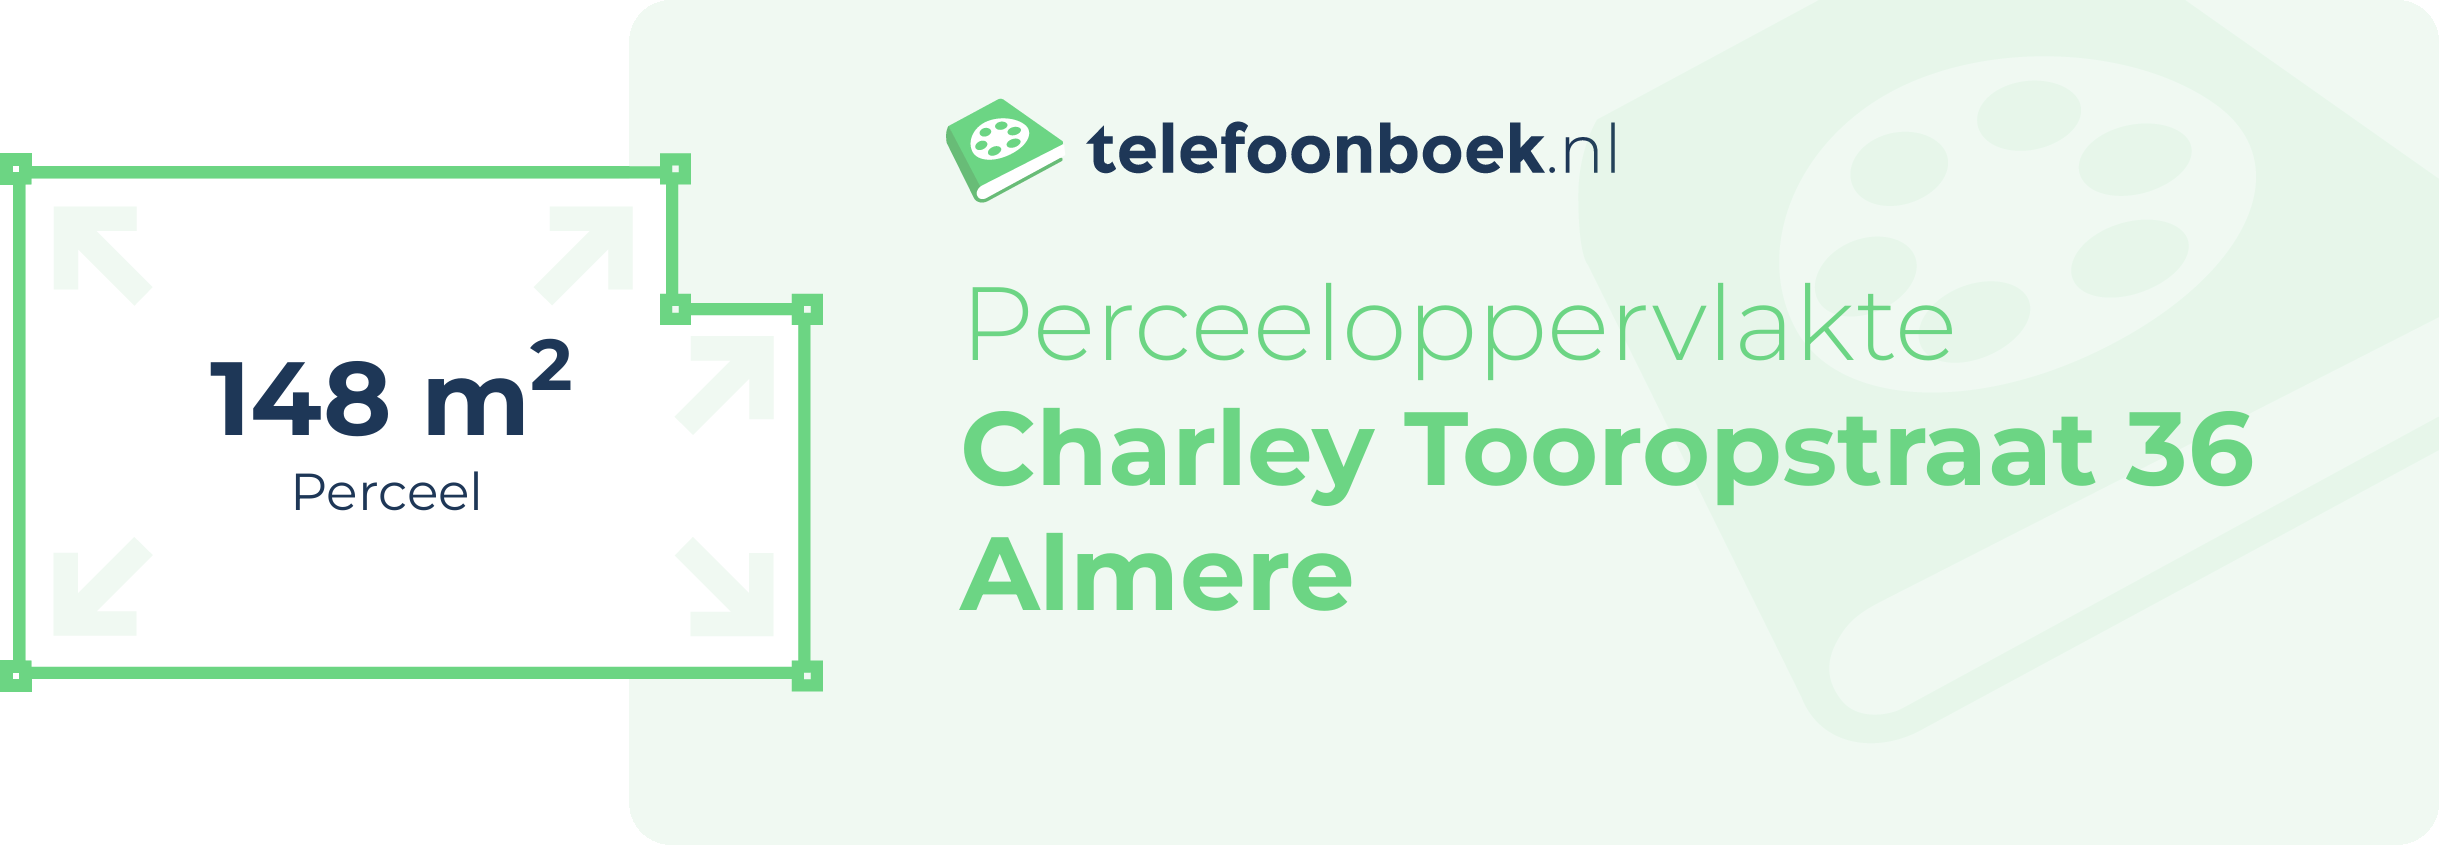 Perceeloppervlakte Charley Tooropstraat 36 Almere